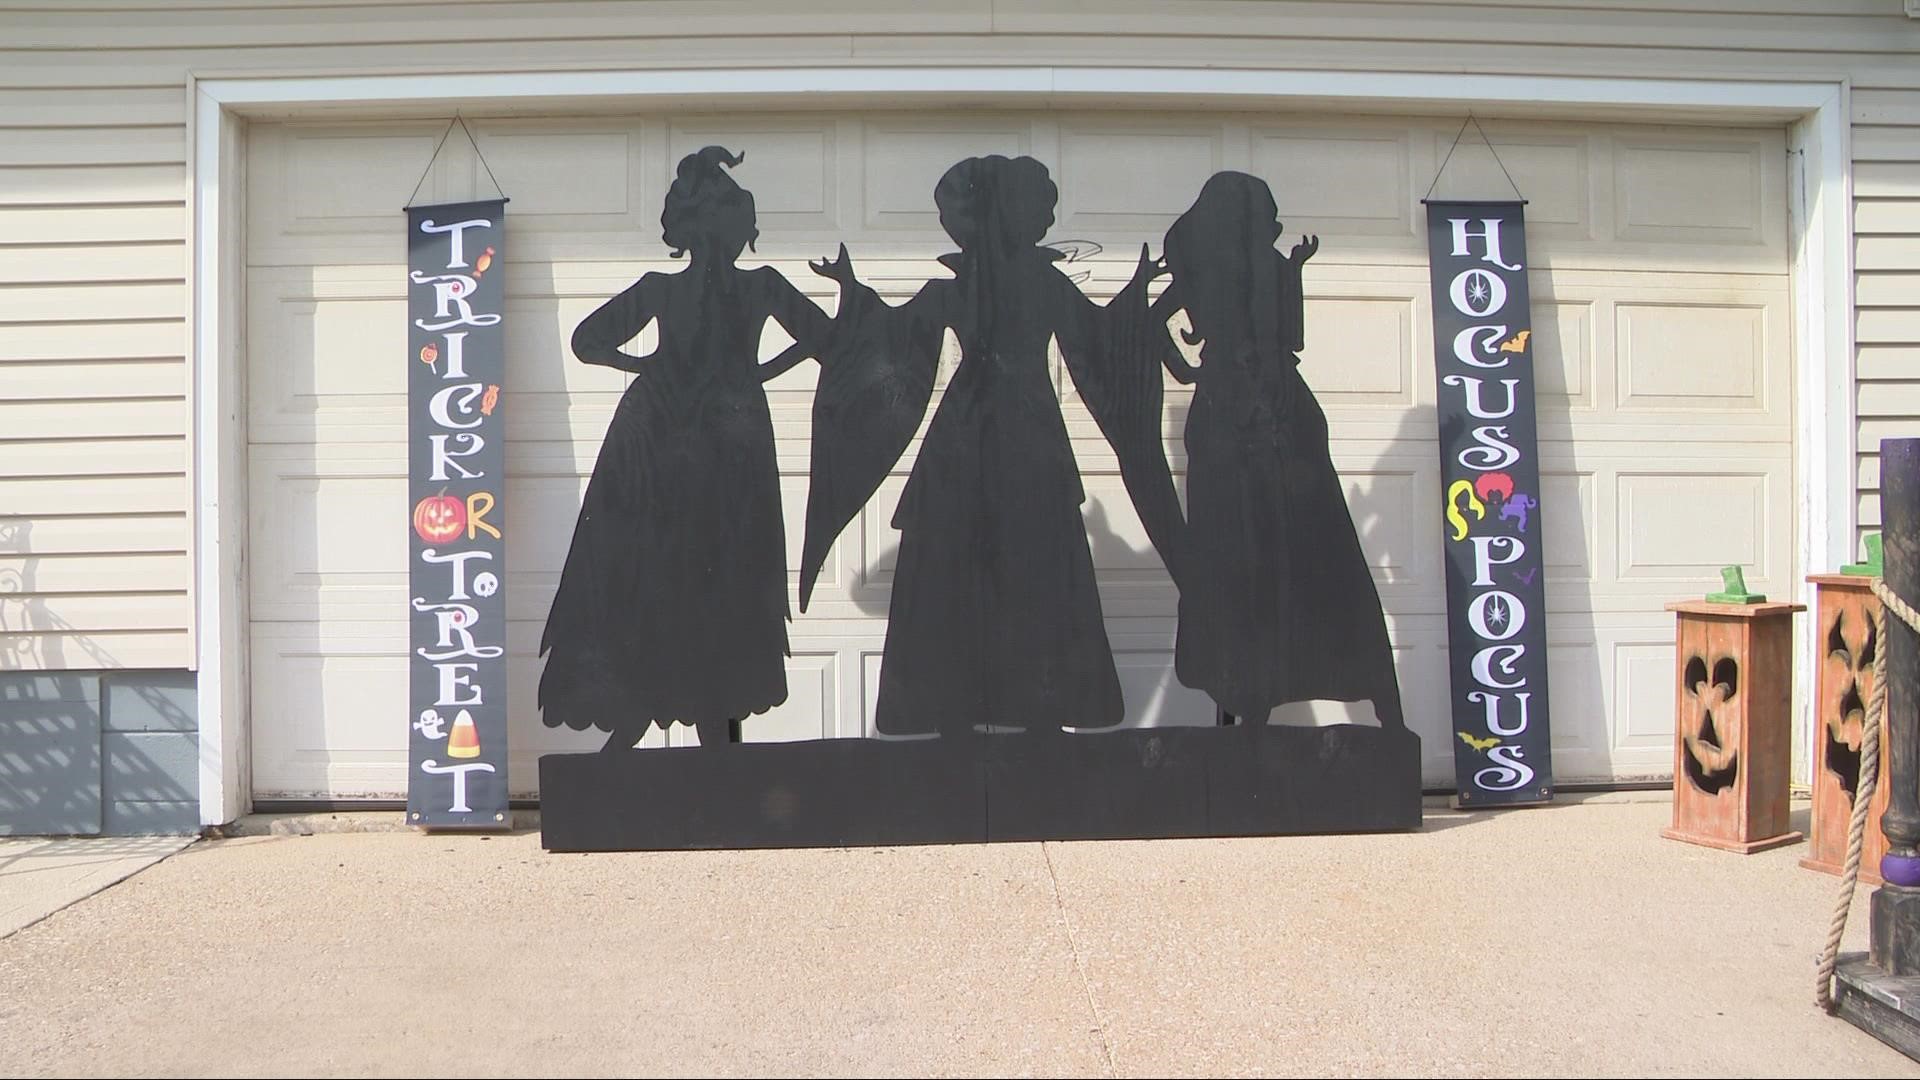 Hocus Pocus 2 decorations in Ohio tribute to Sanderson sisters ...